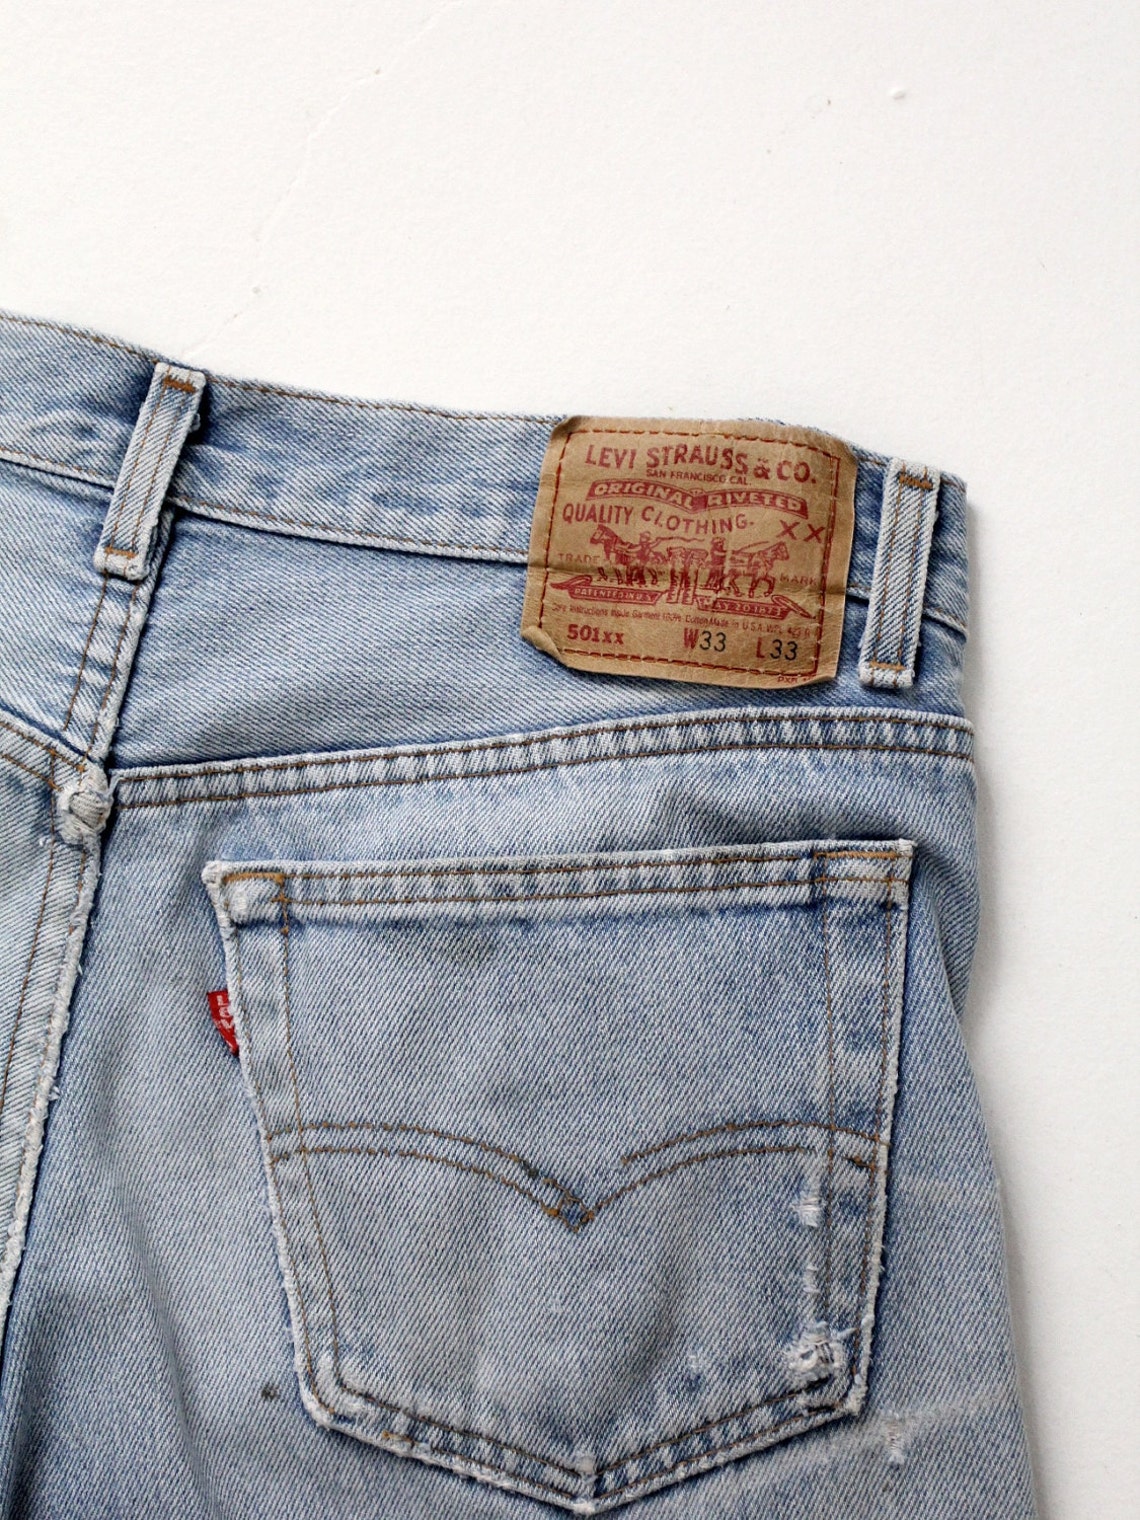 Vintage 501s Levis 501xx Denim Jeans 33 X 30 - Etsy